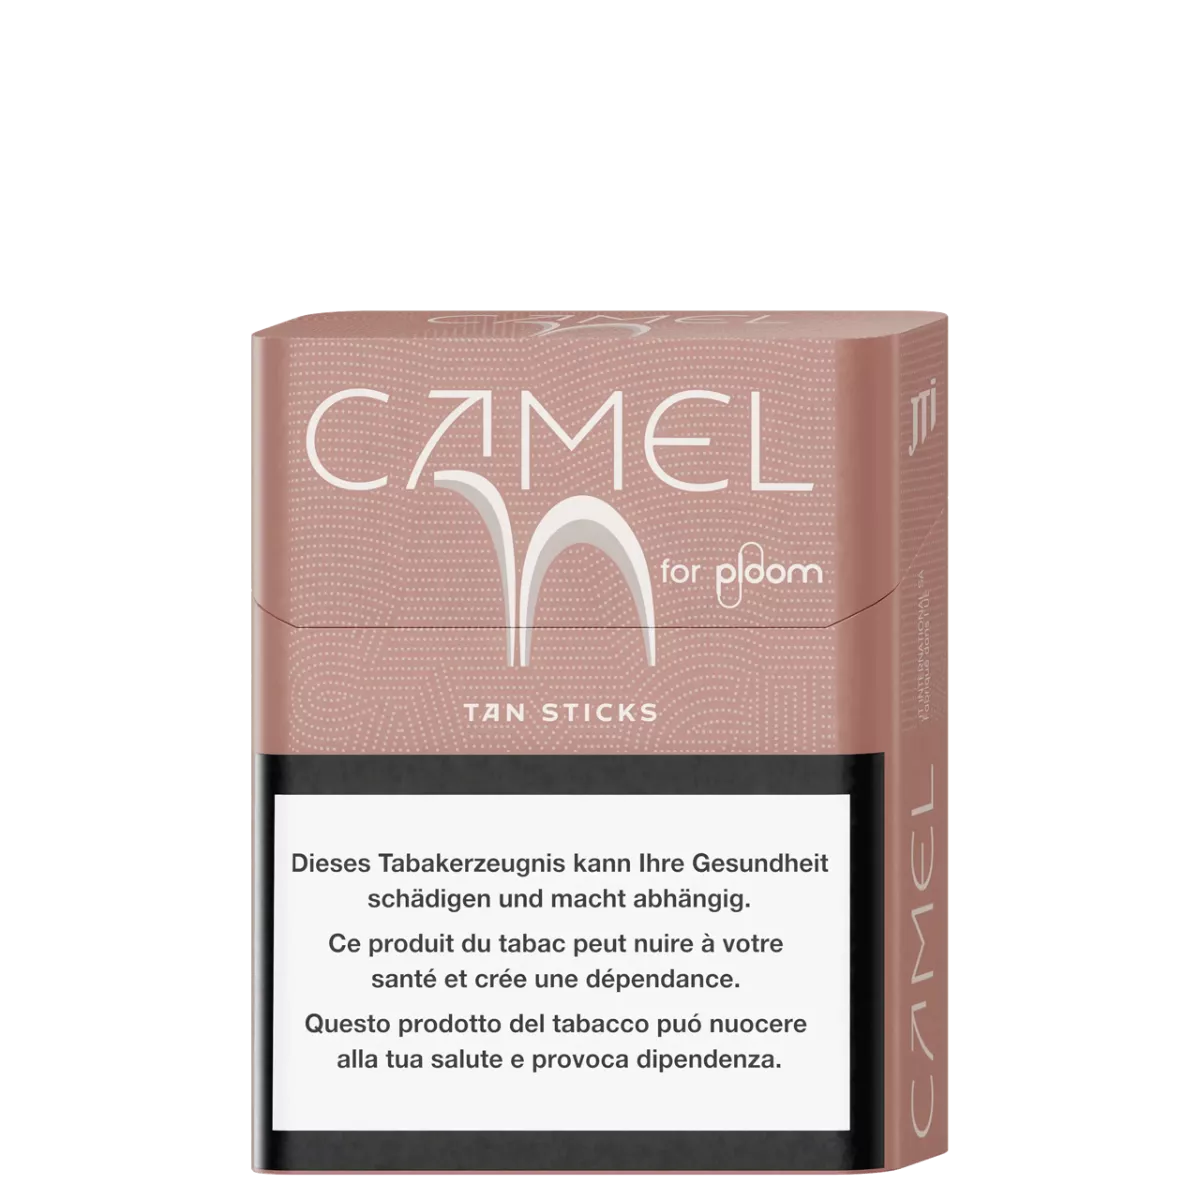 Camel tan sticks pour ploom X advanced
